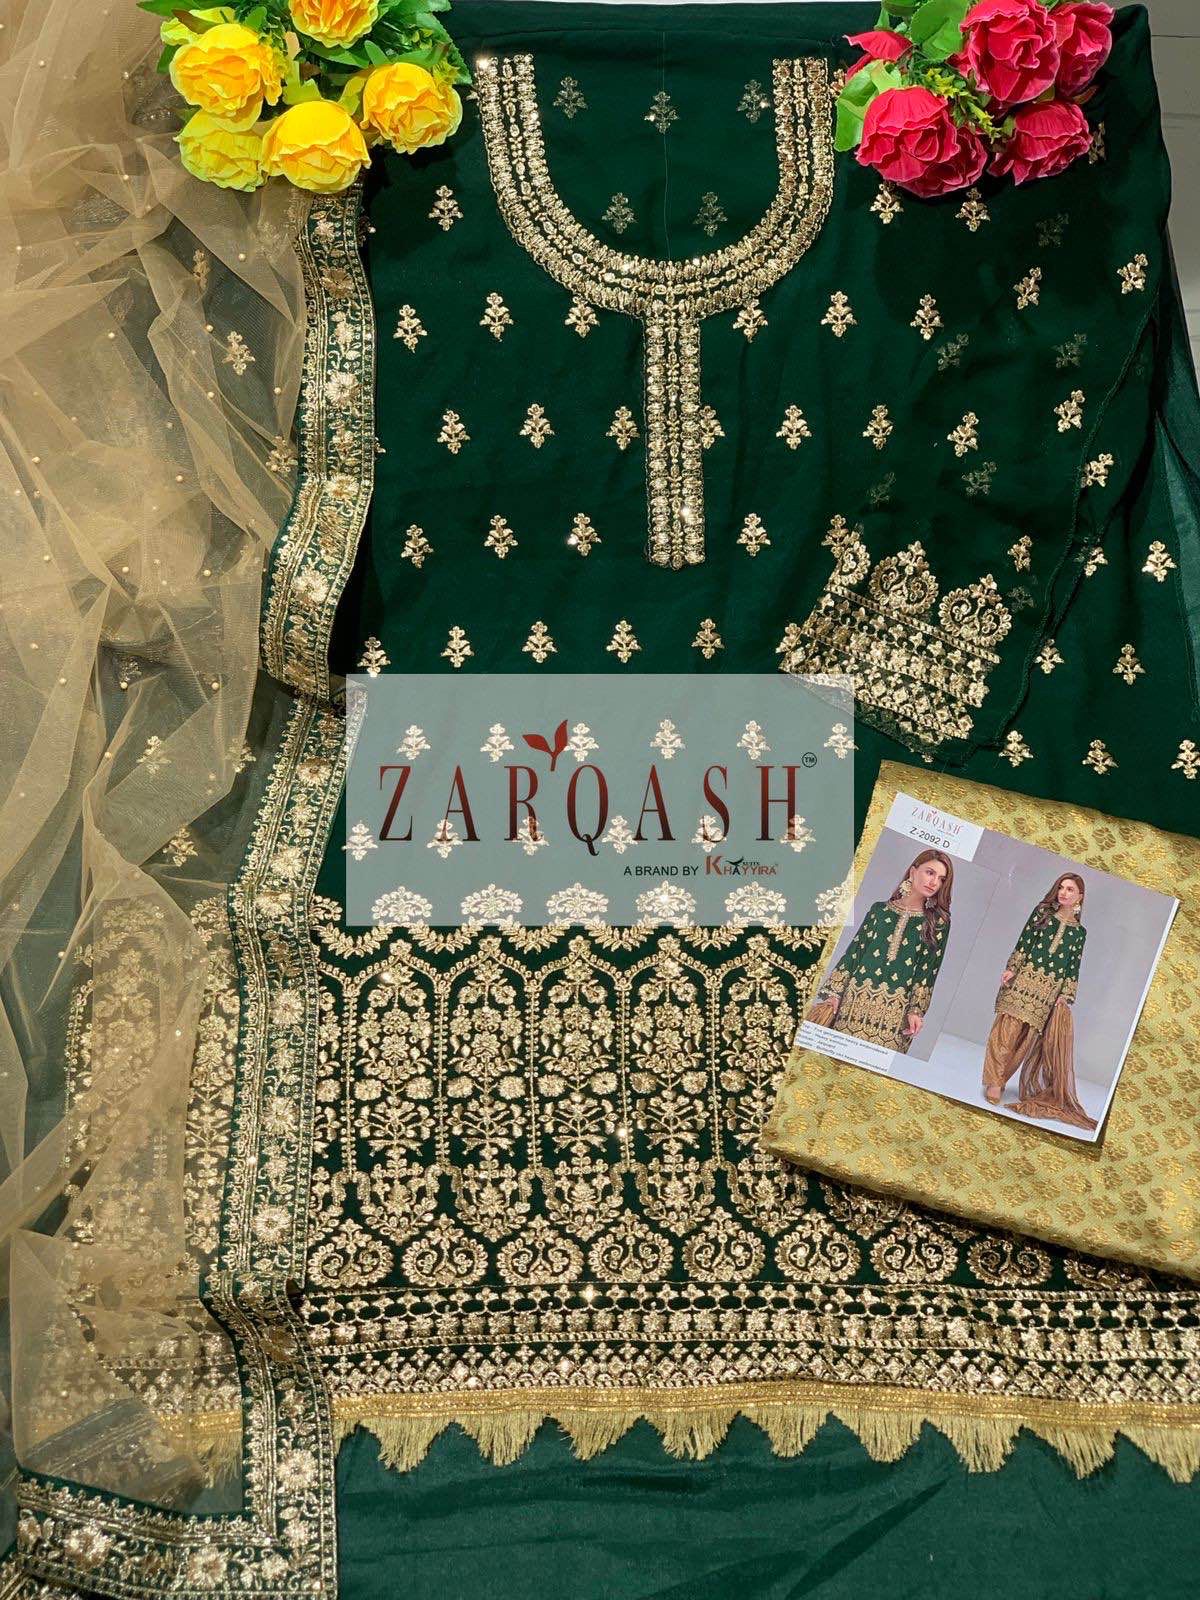 Zarqash Z 2092 Ad Pakistani Suits Catalog Lowest Price